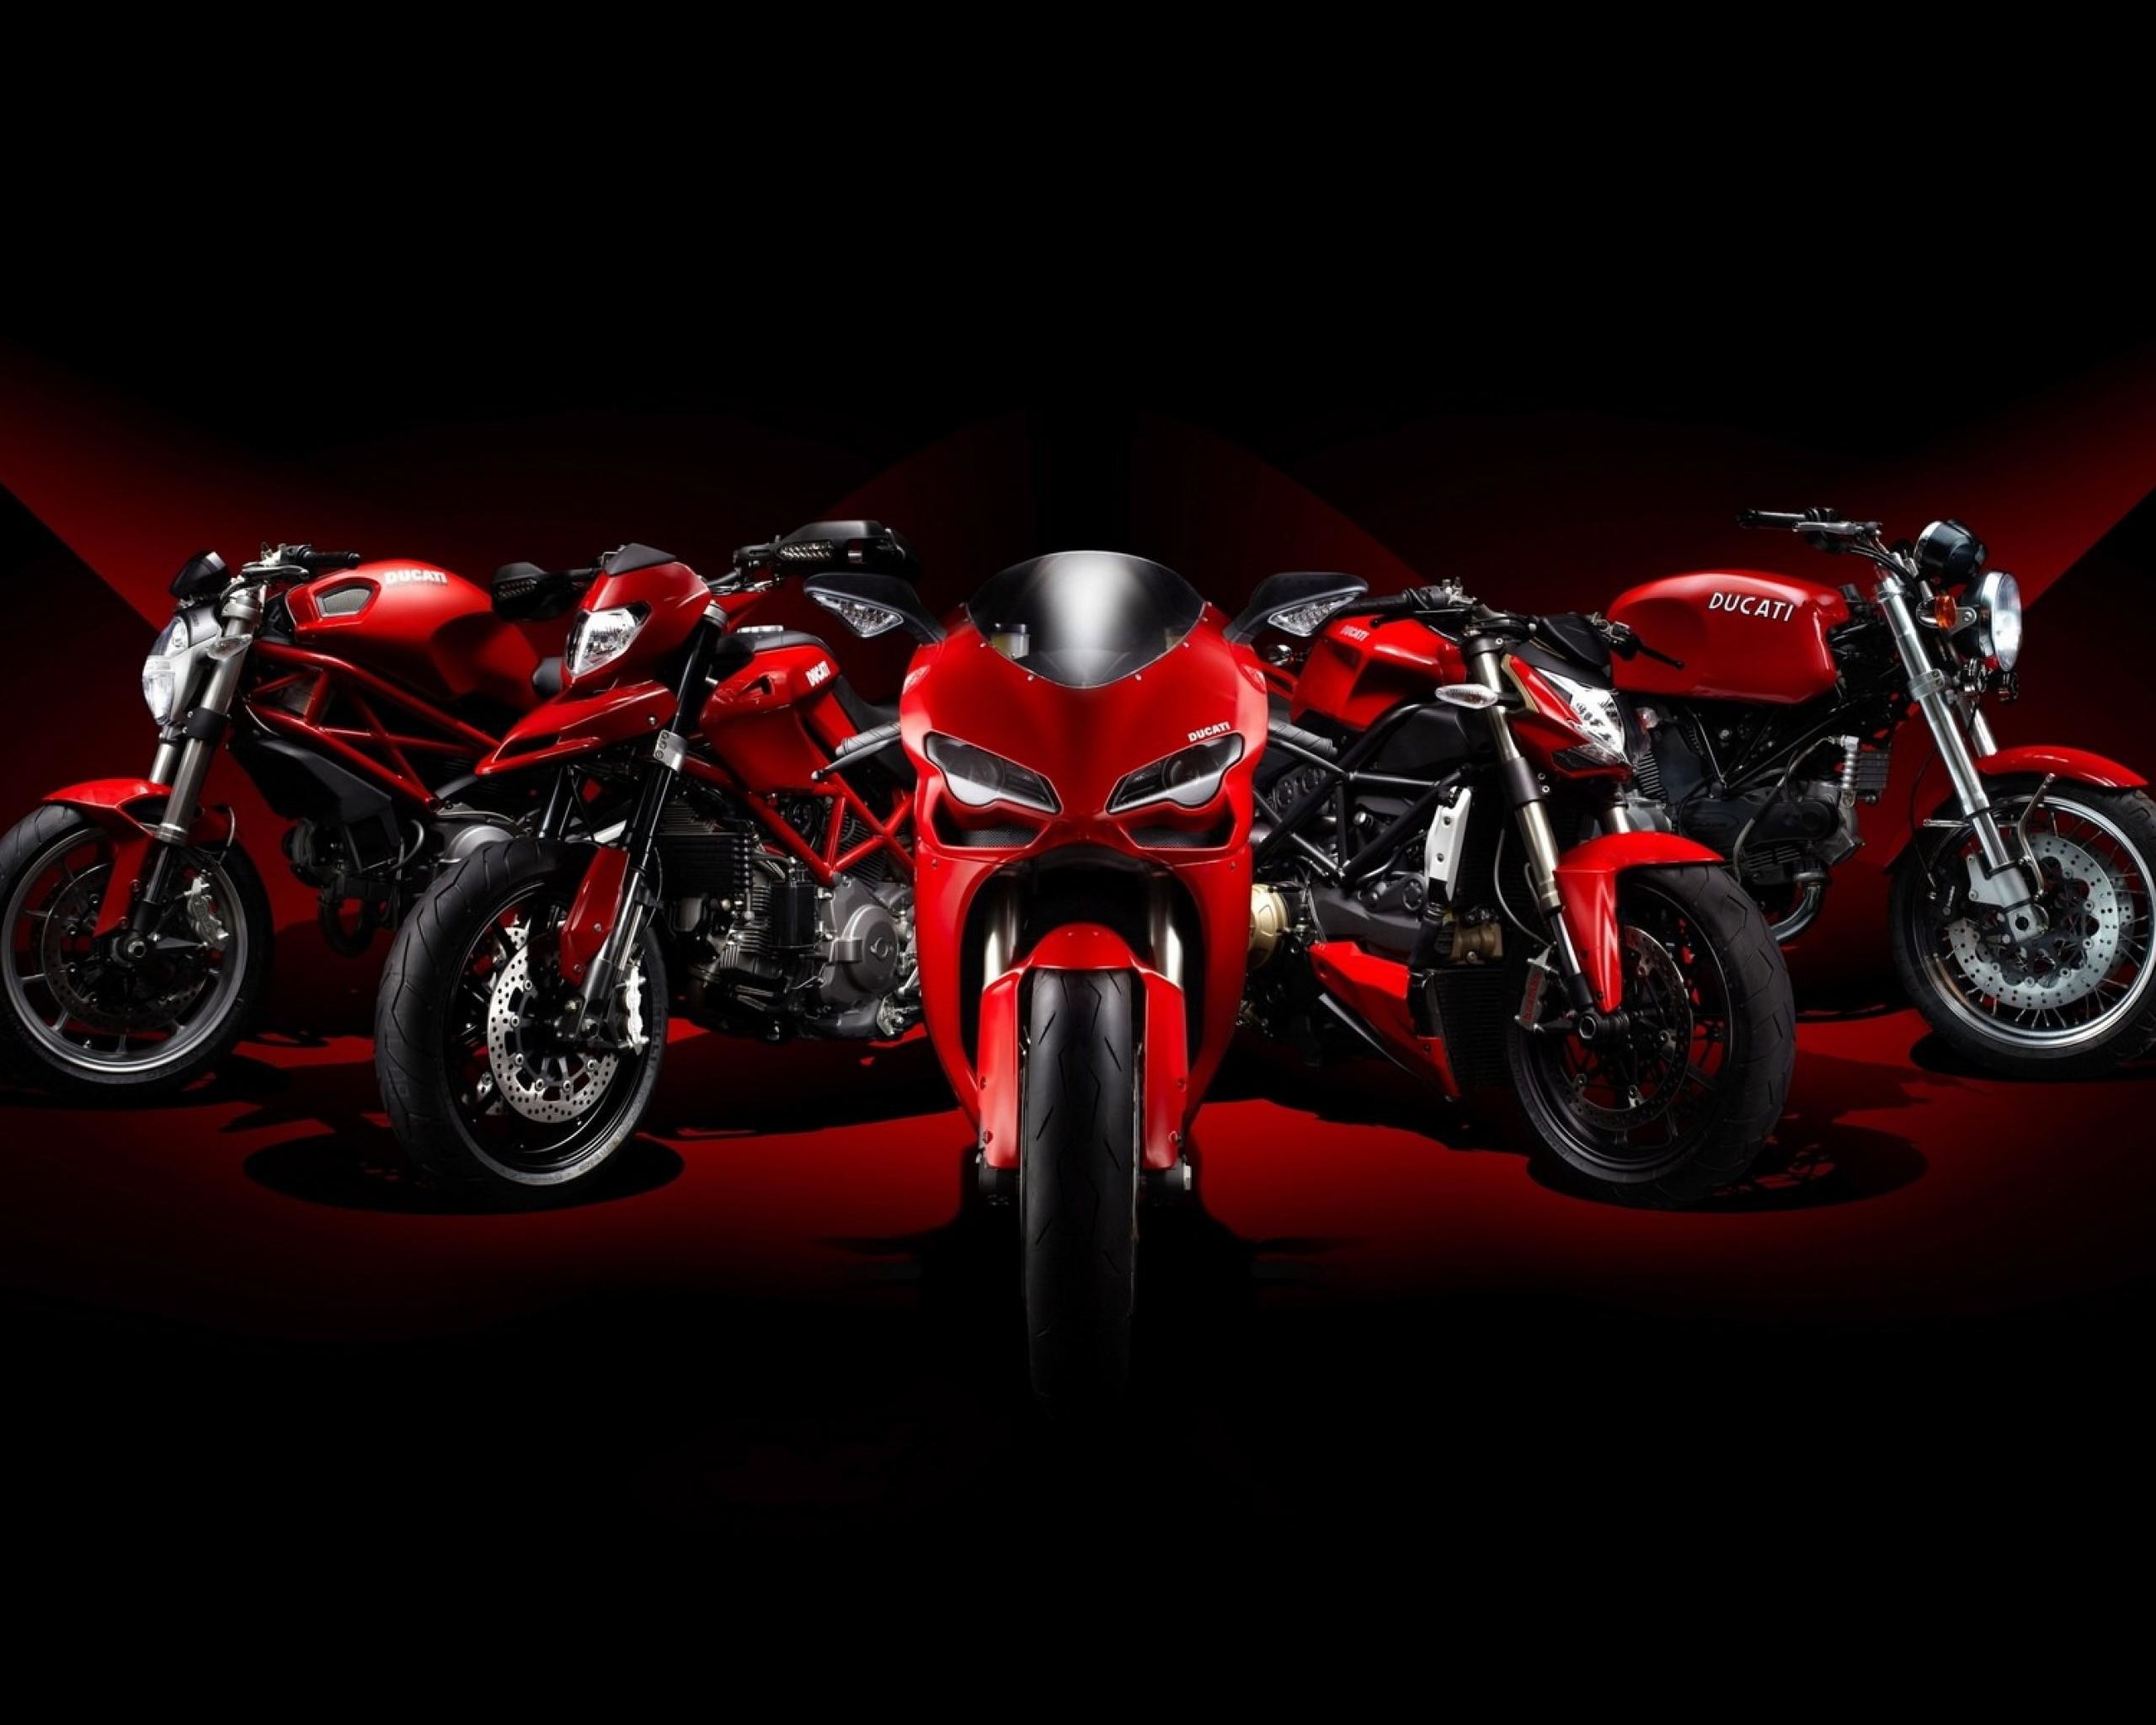 Motorcycle Wallpaper Hd - Ducati Background - HD Wallpaper 